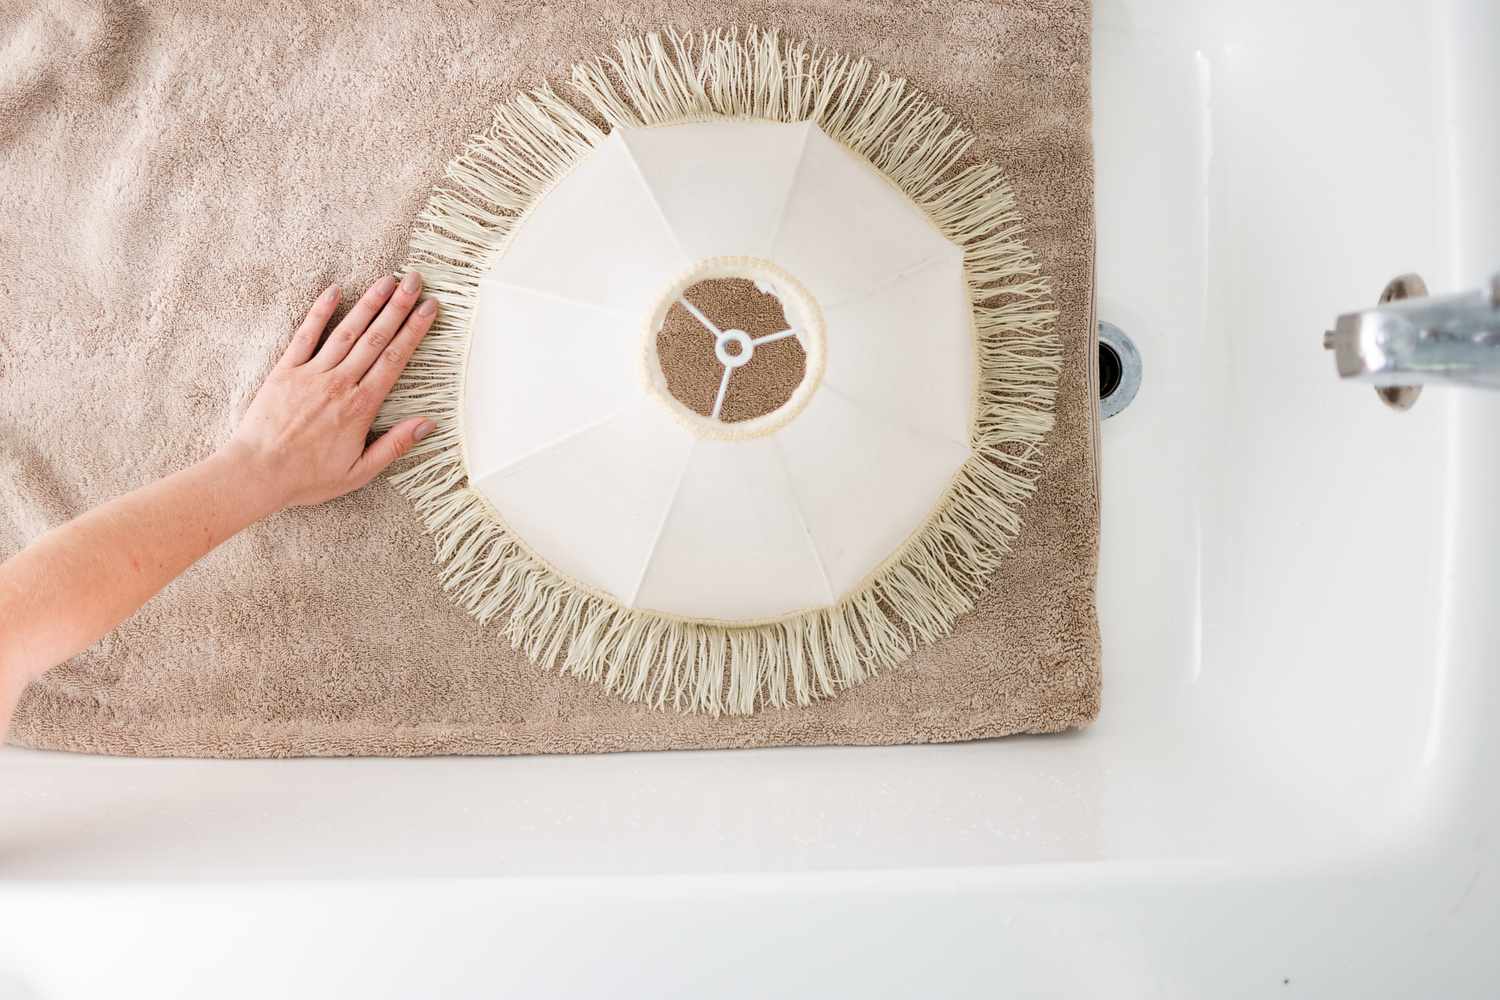 Abajur branco com franjas colocado sobre uma toalha marrom para secar na banheira